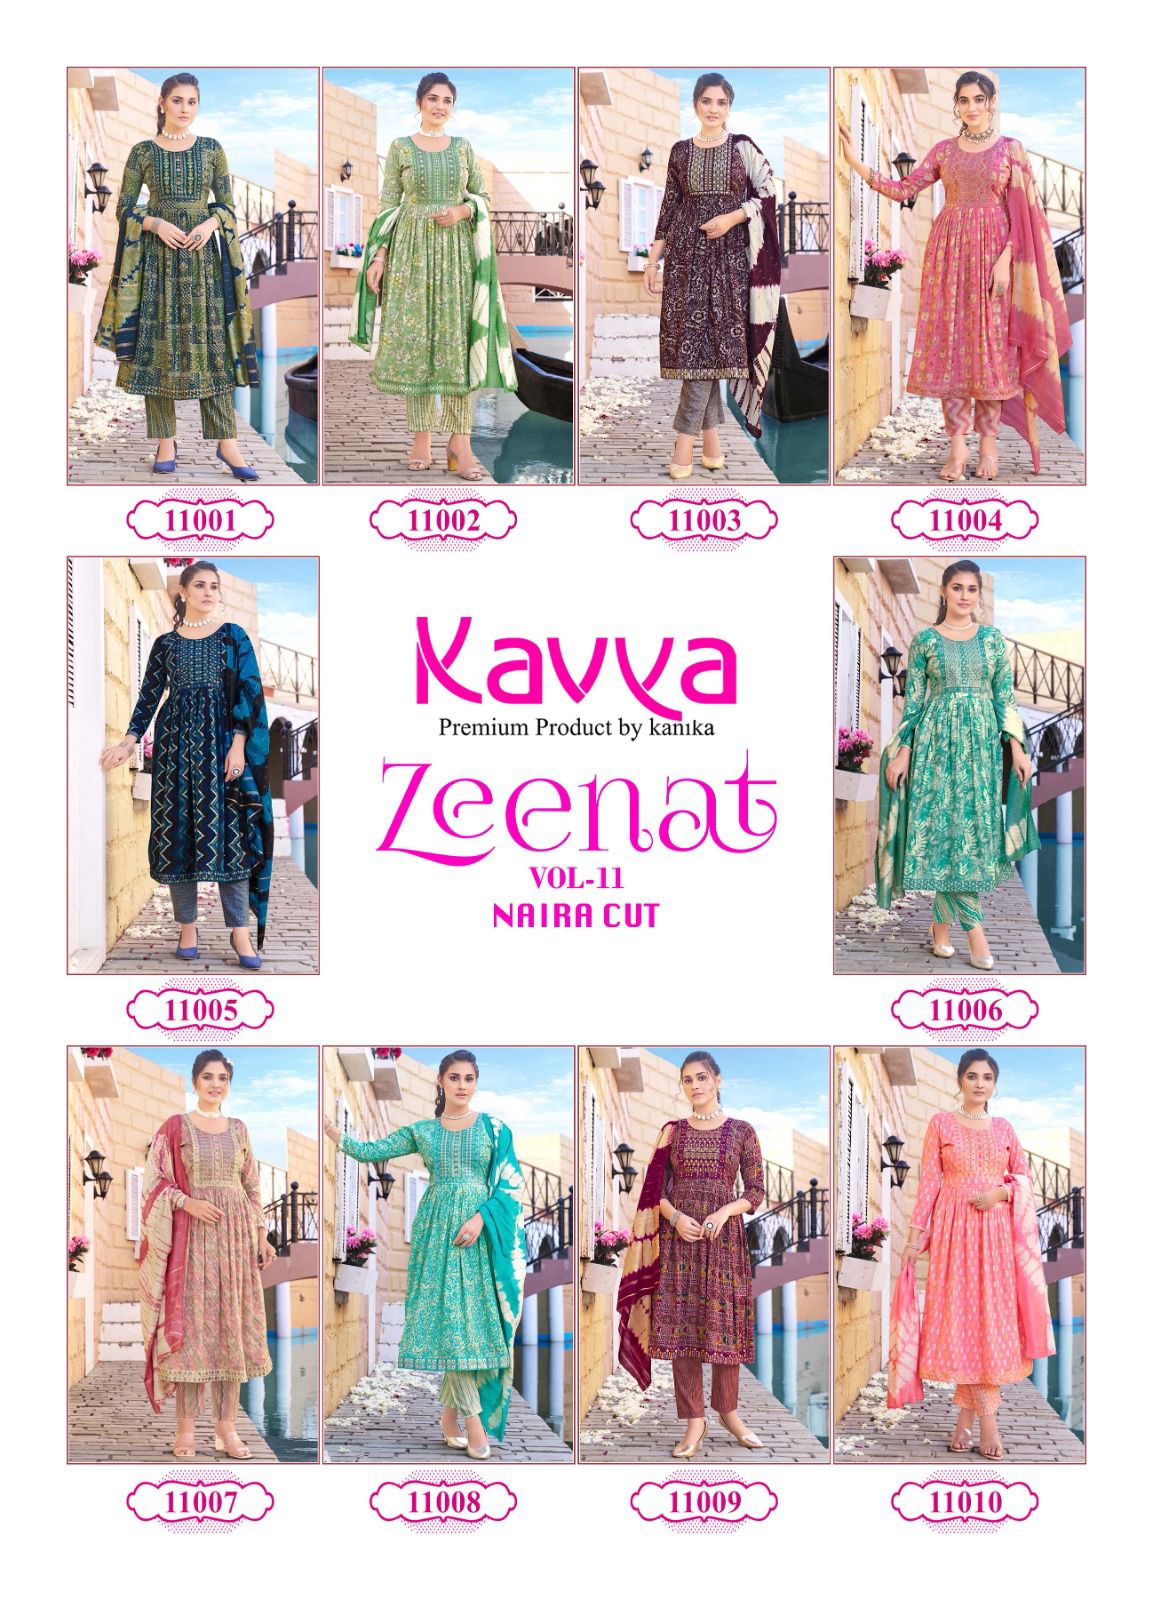 Kavya Zeenat Vol 11 collection 4